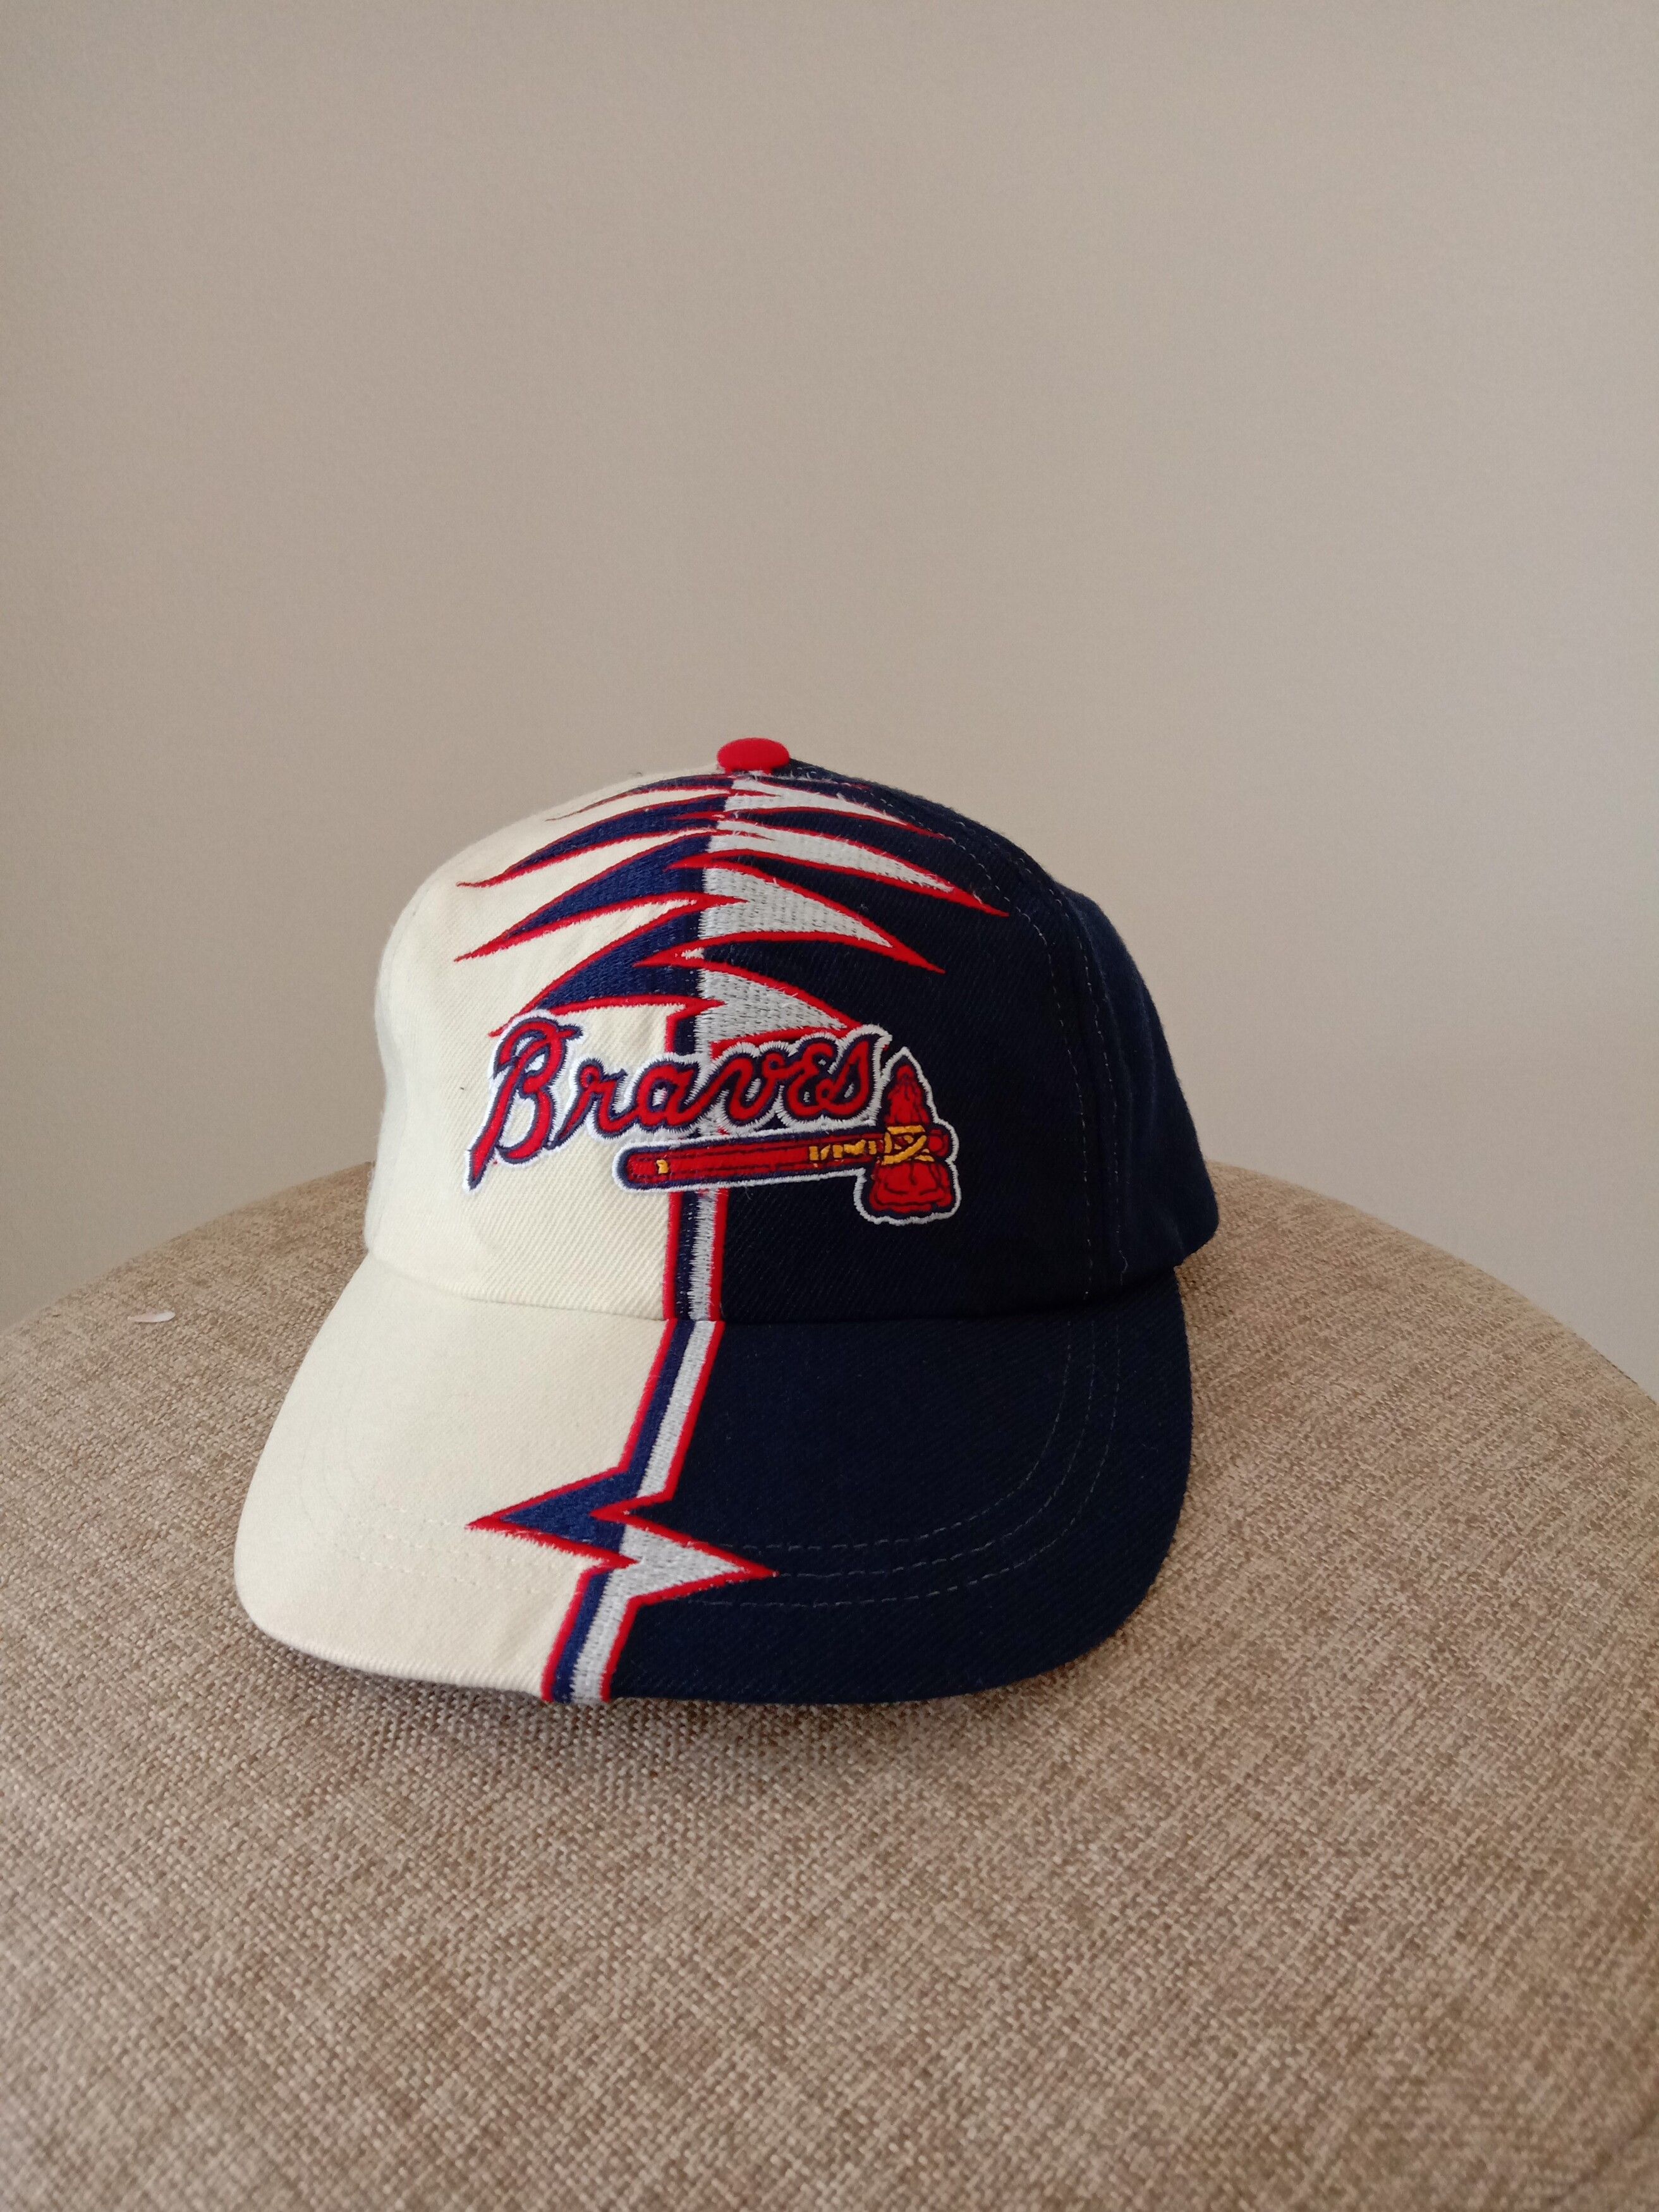 Vintage Vintage Shockwave Braves hat | Grailed